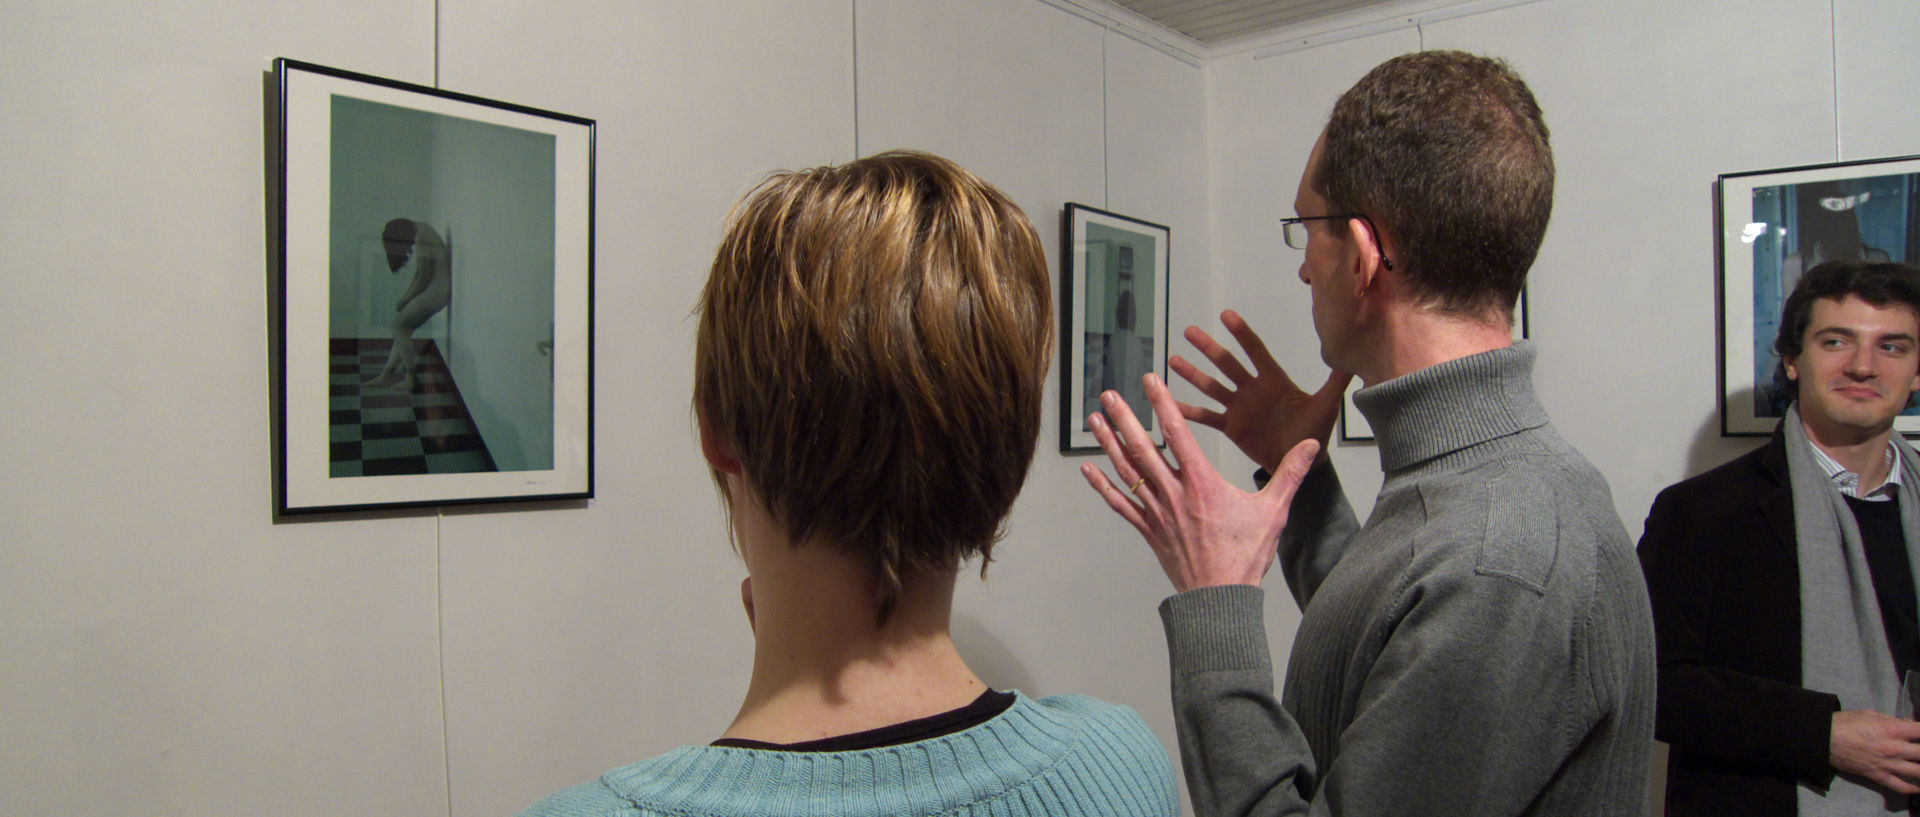 Vendredi 28 novembre 2008, Vernissage de l'exposition de photos de Christophe Larivière, galerie Koko, rue Saint-André, à Lille.